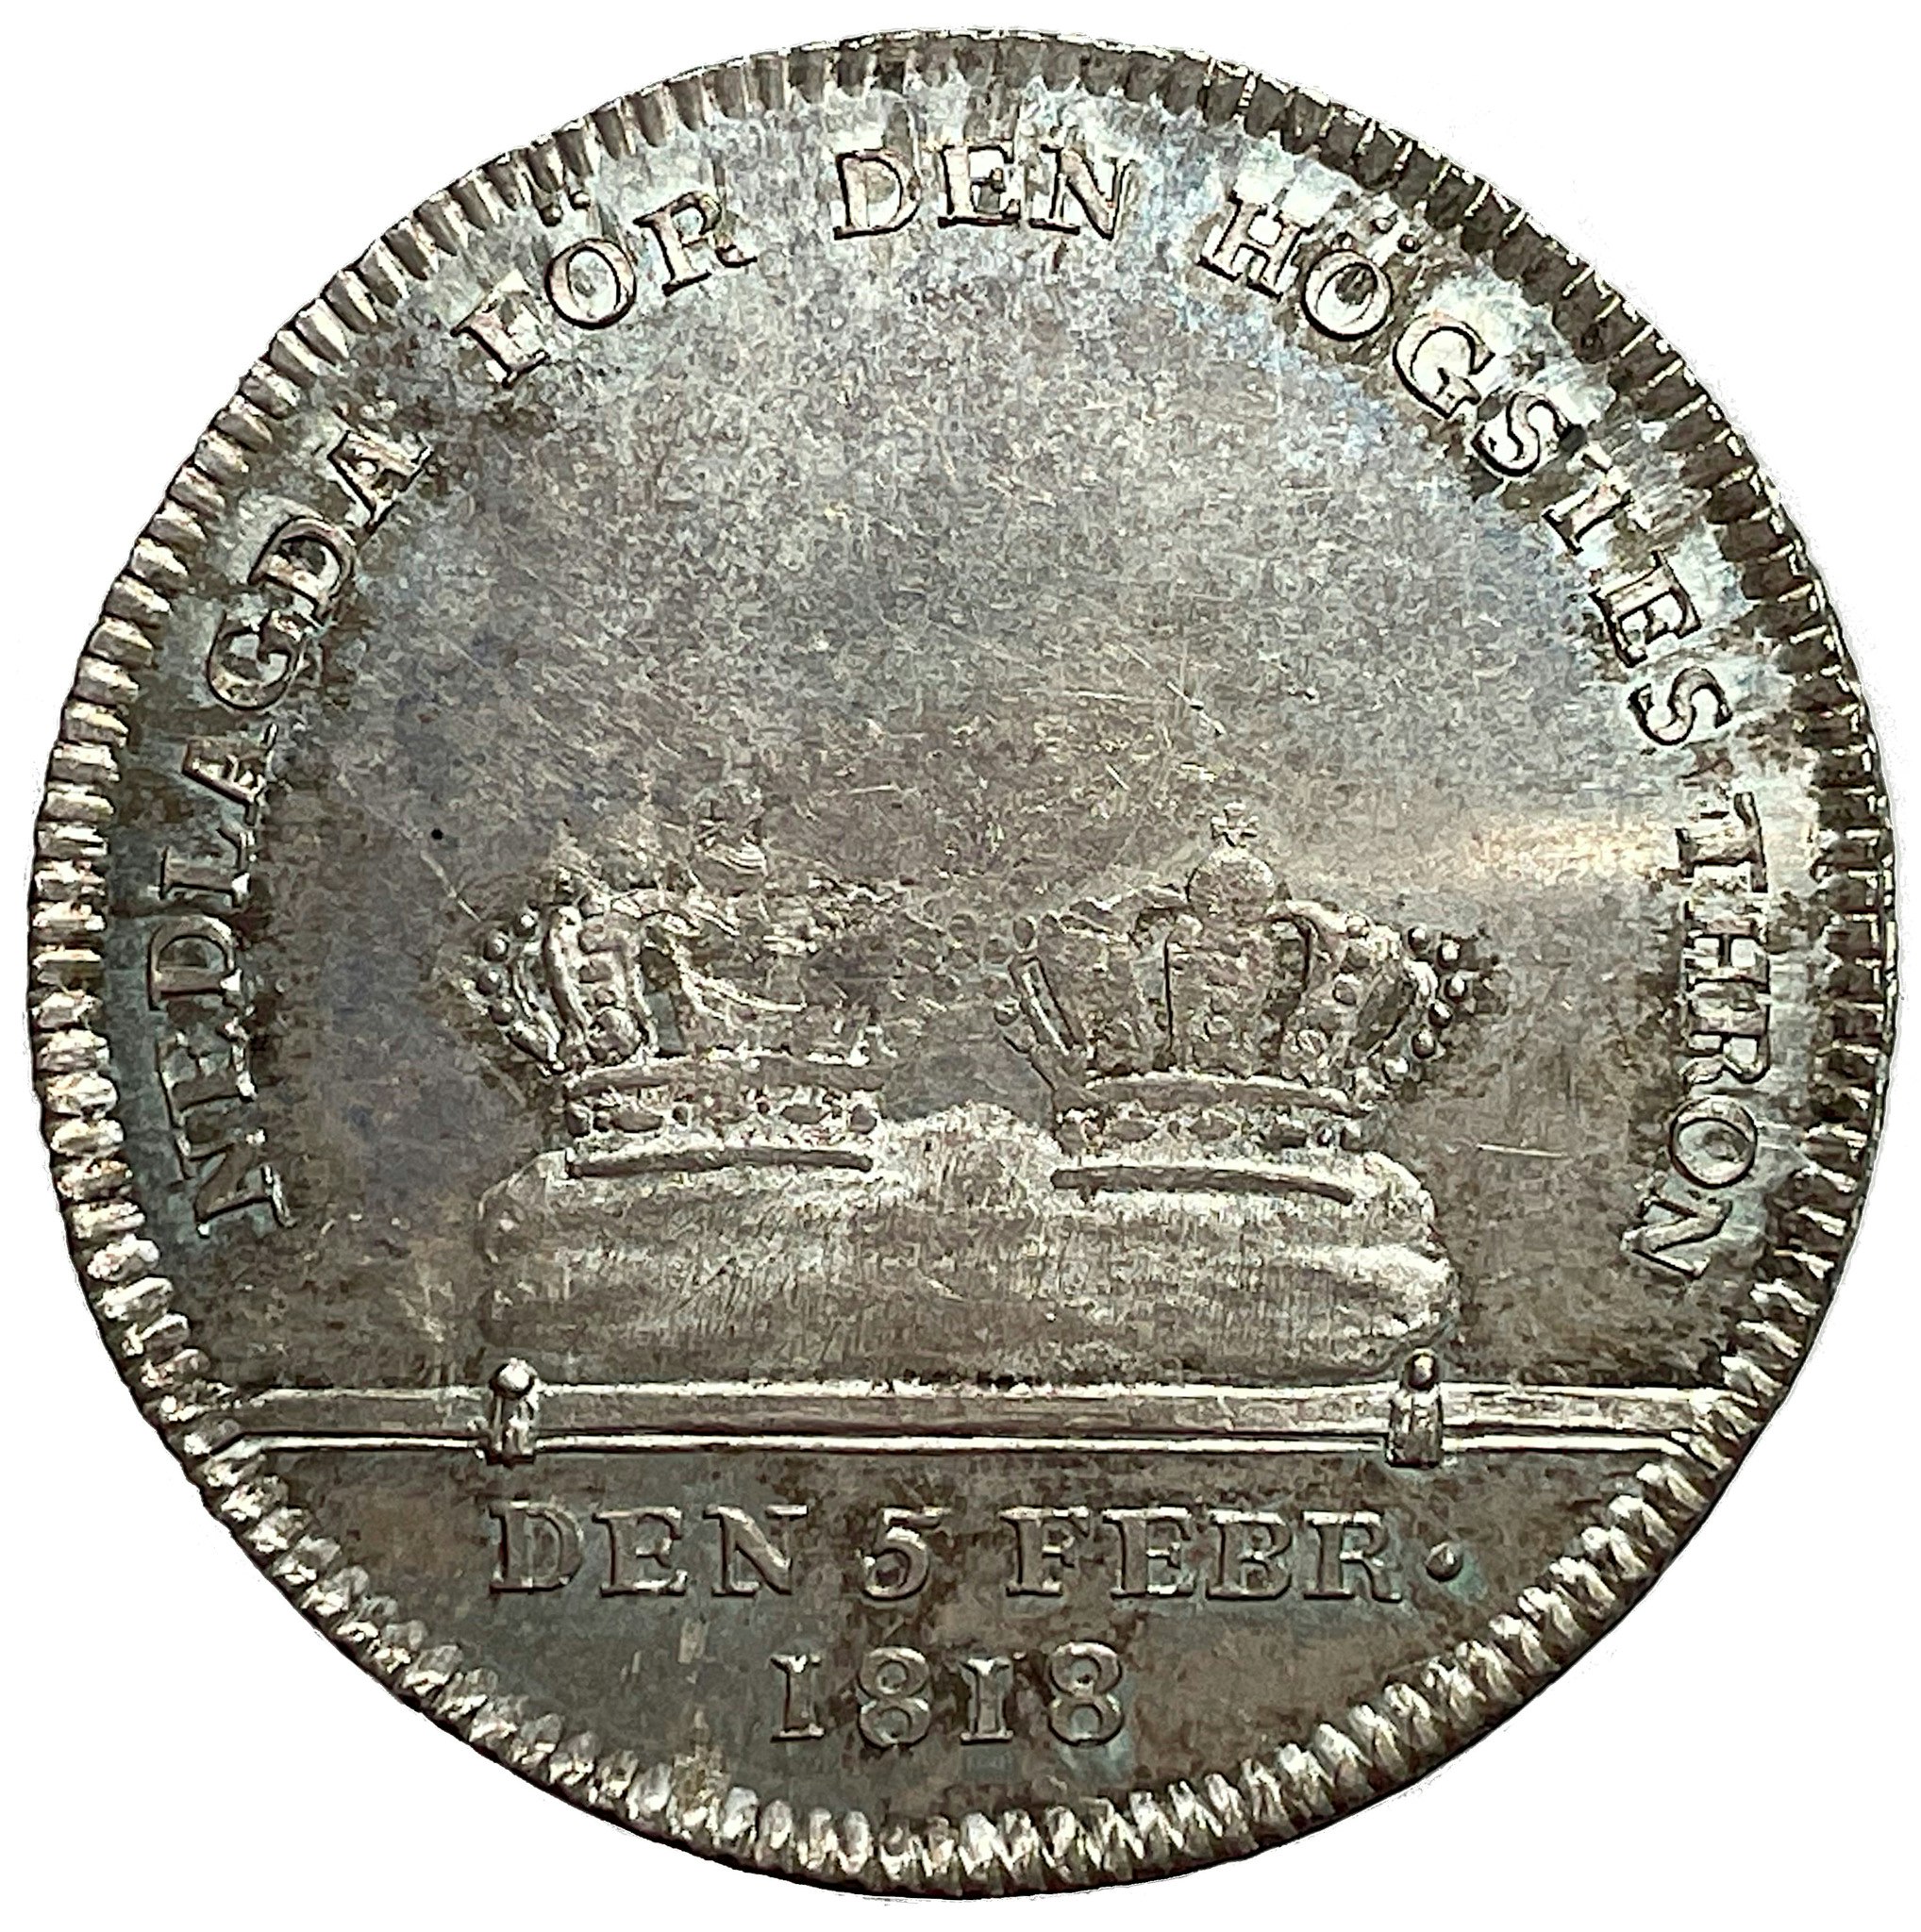 Karl XIII - Kastmynt 1/3 Riksdaler till begravning 1818 -  i underbar kvalitet, full lyster och härligt skarpa kanter